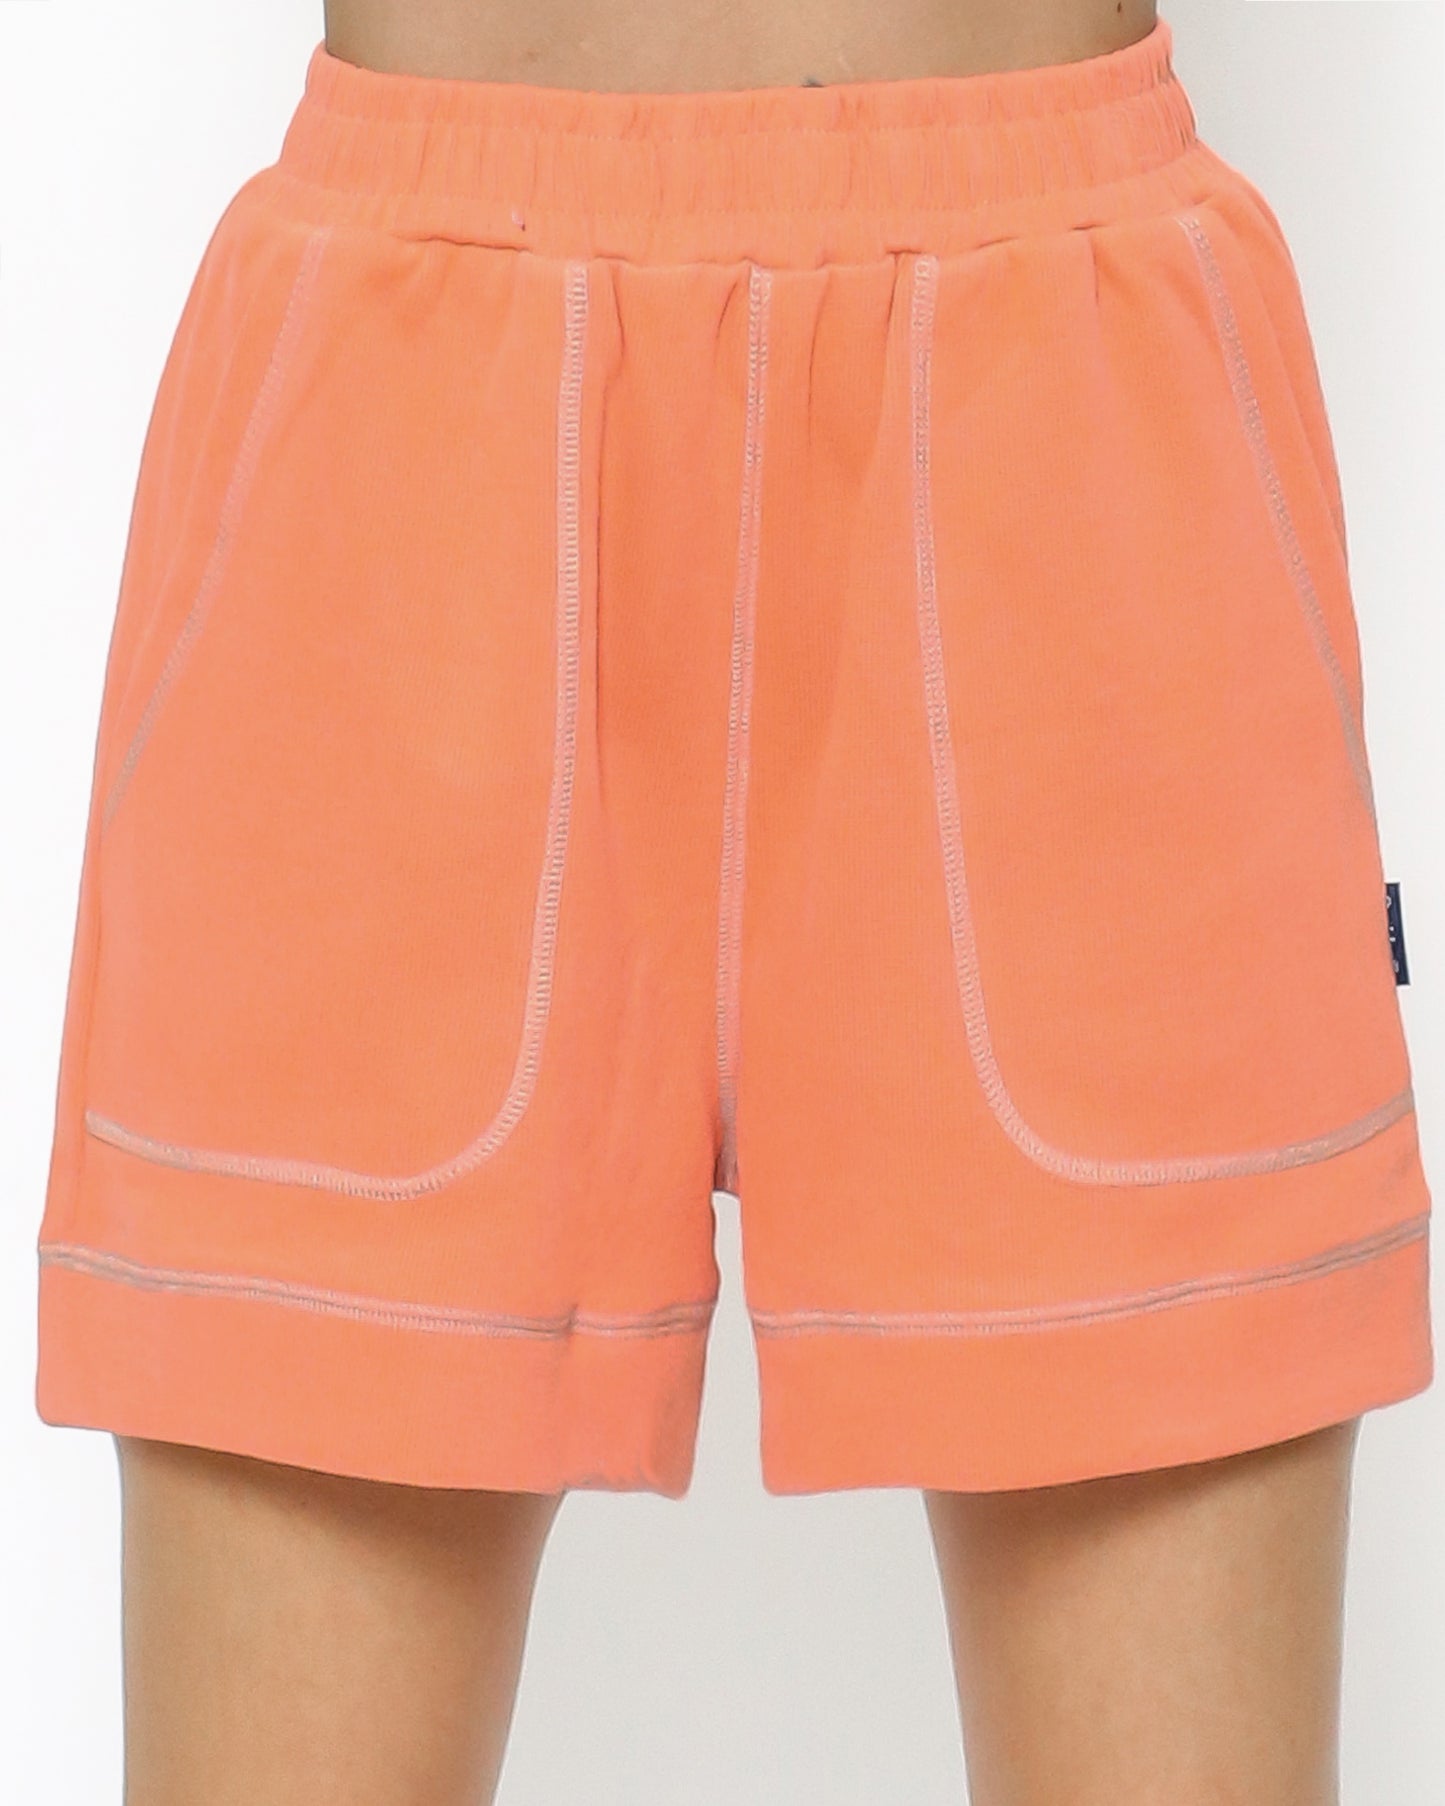 霓虹橙色和象牙色飾邊運動短褲*預購*